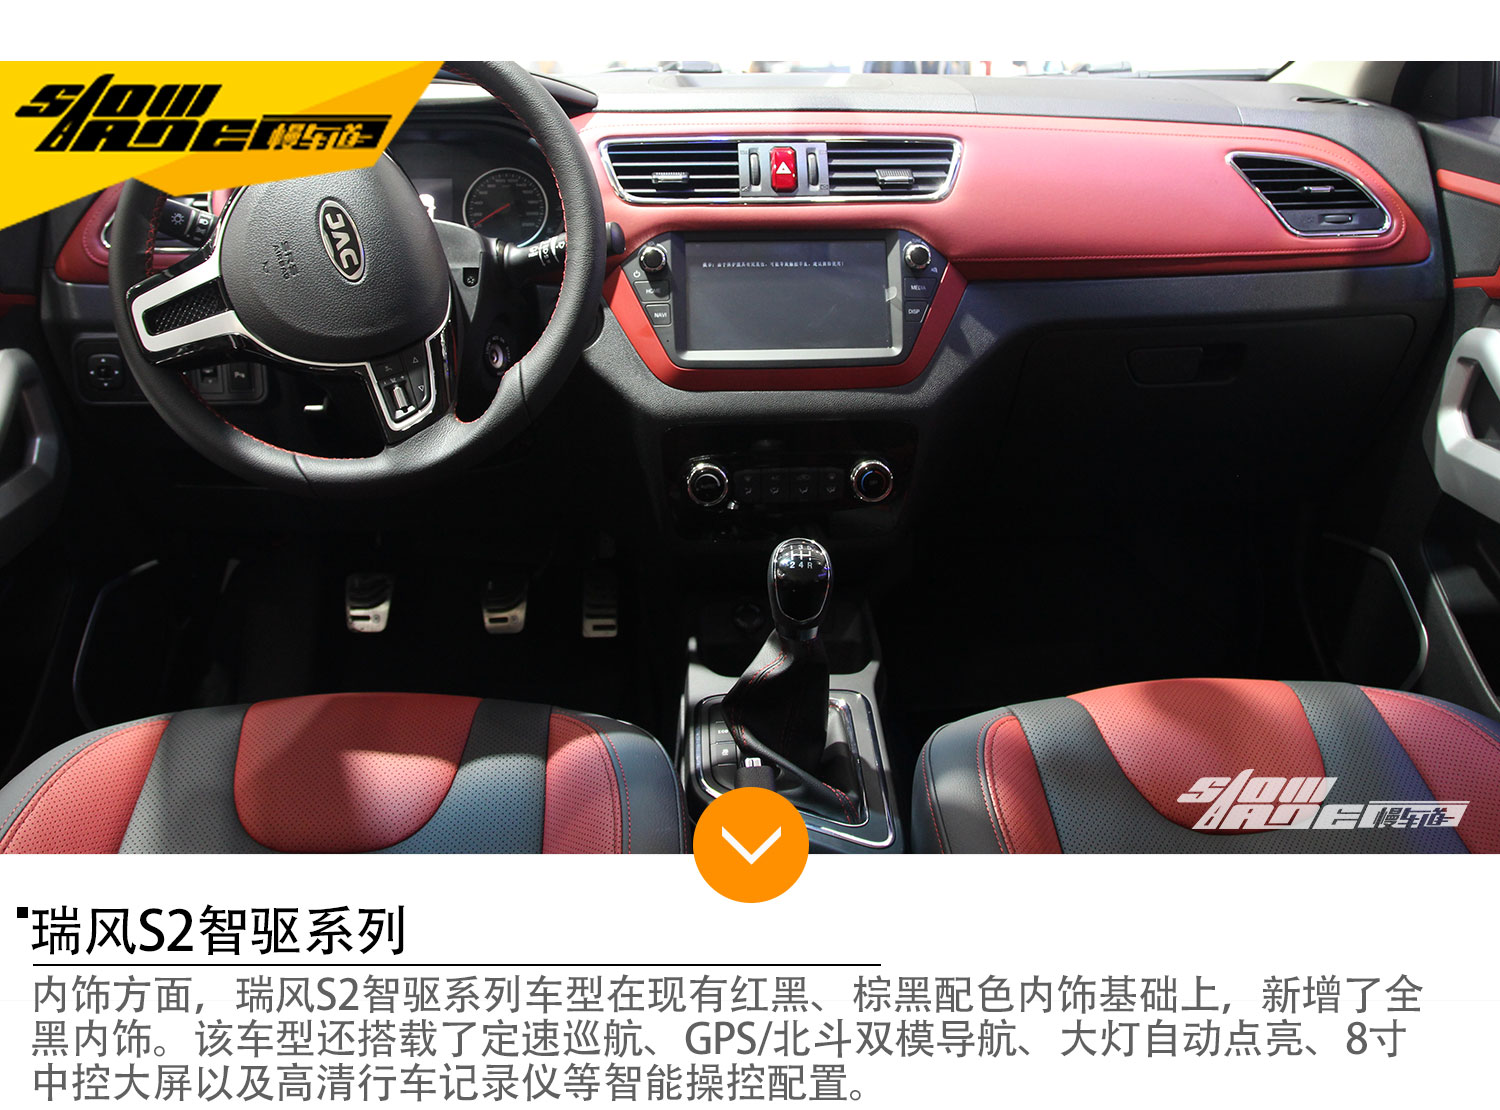 江淮小型SUV 瑞风S2/S3智驱系列购车手册